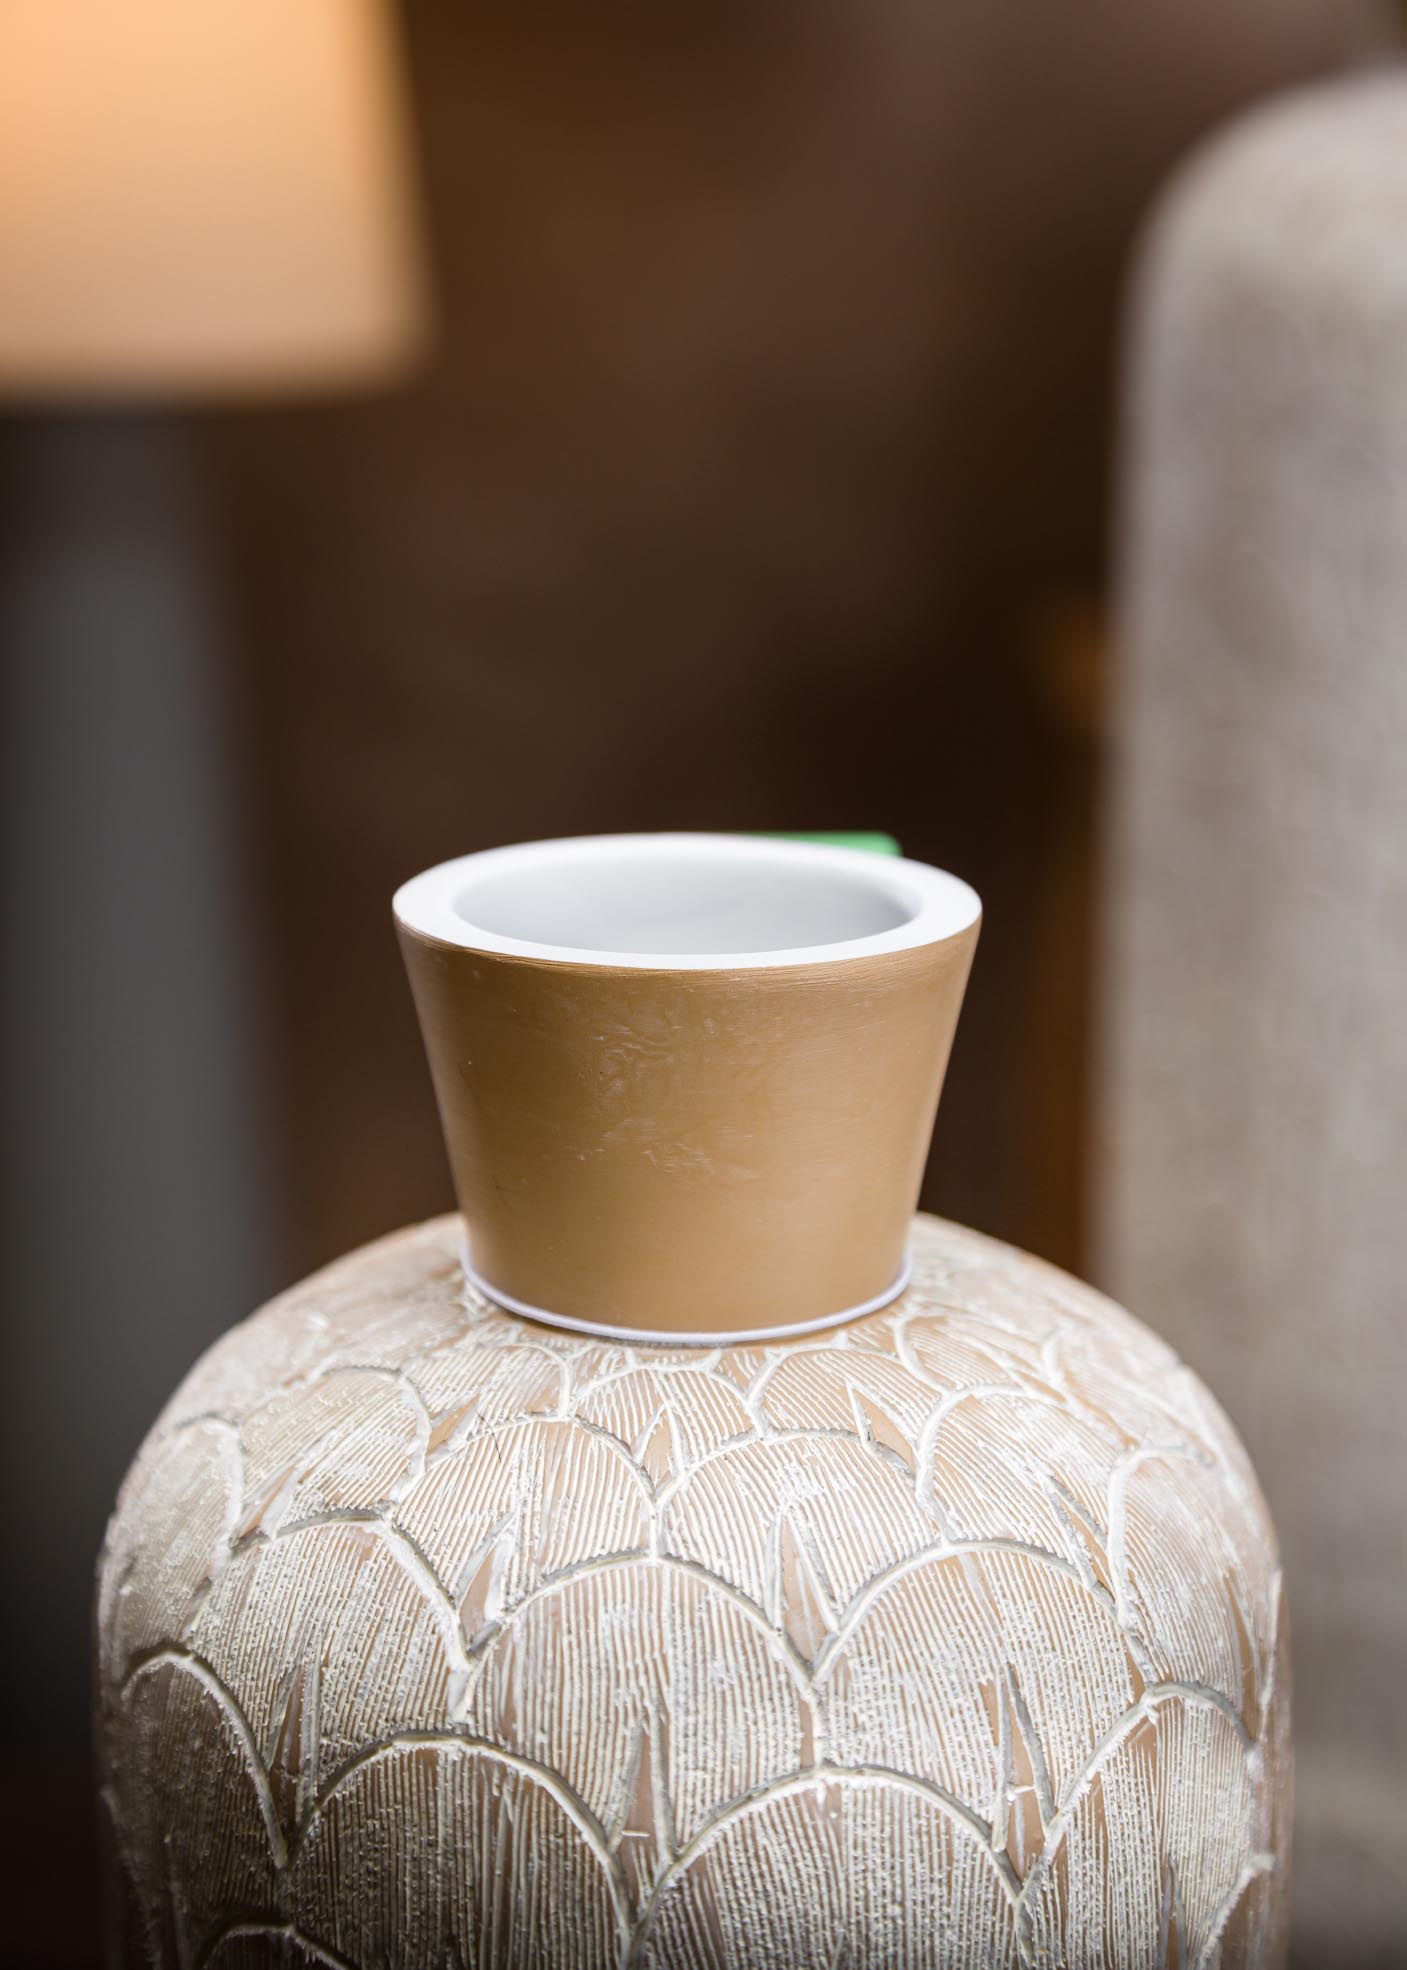 Vasi in ceramica: il design per tutti i gusti